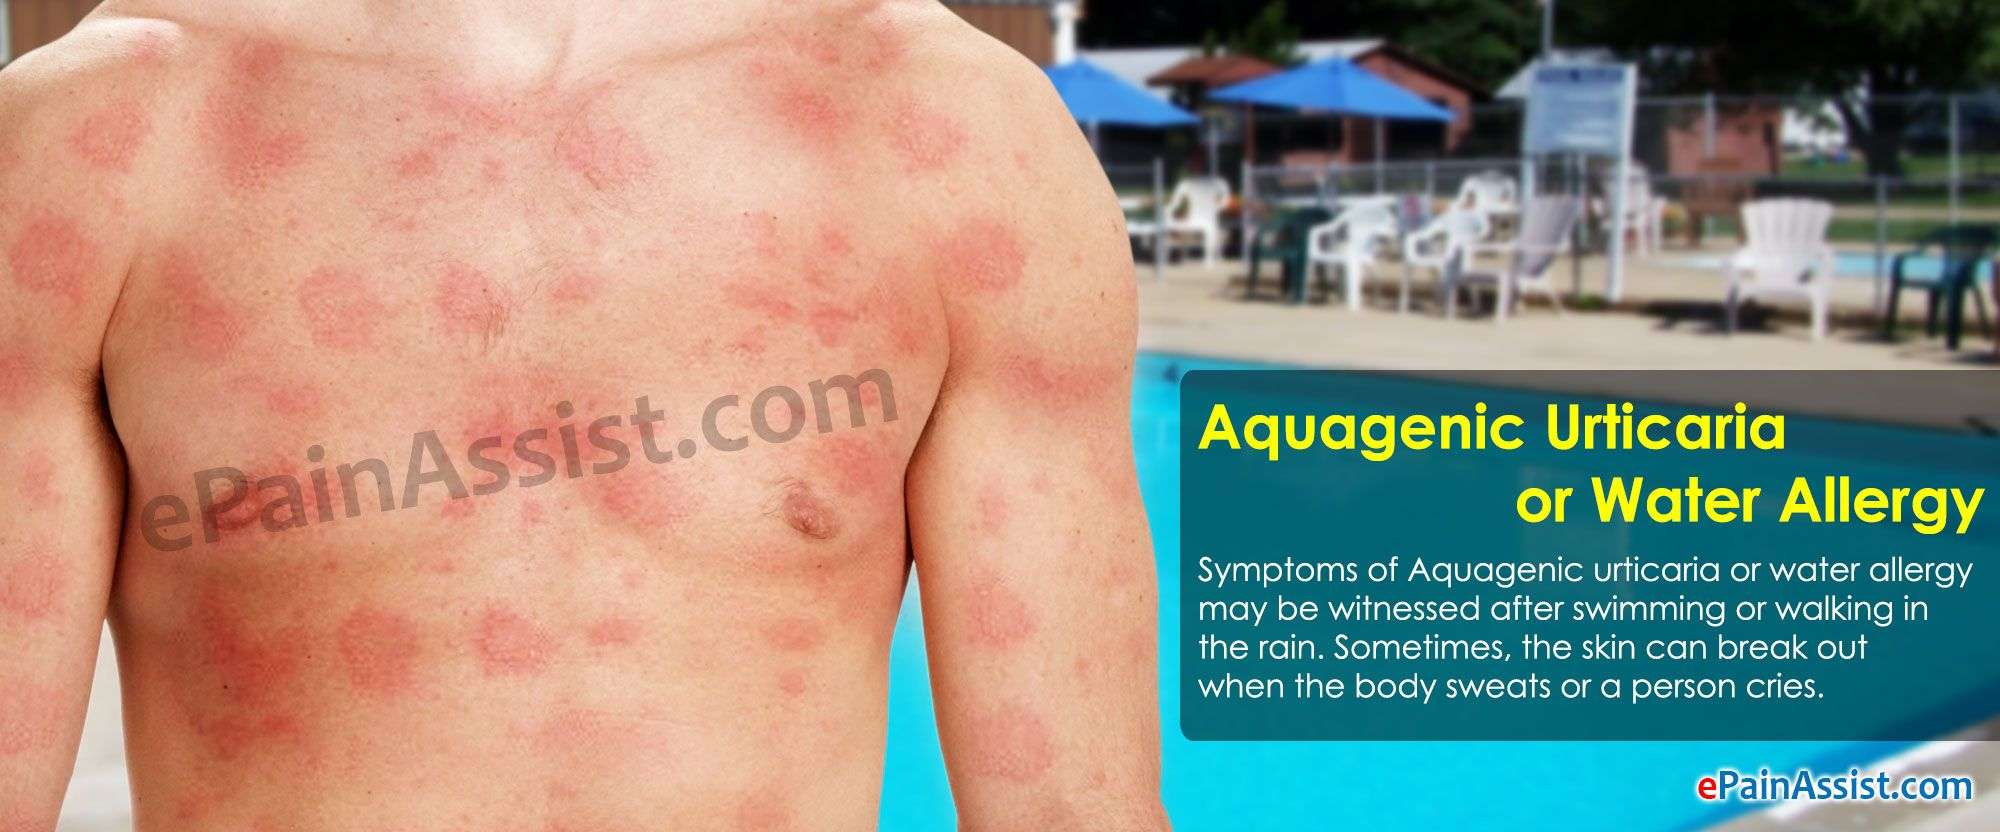 Aquagenic Urticaria or Water Allergy